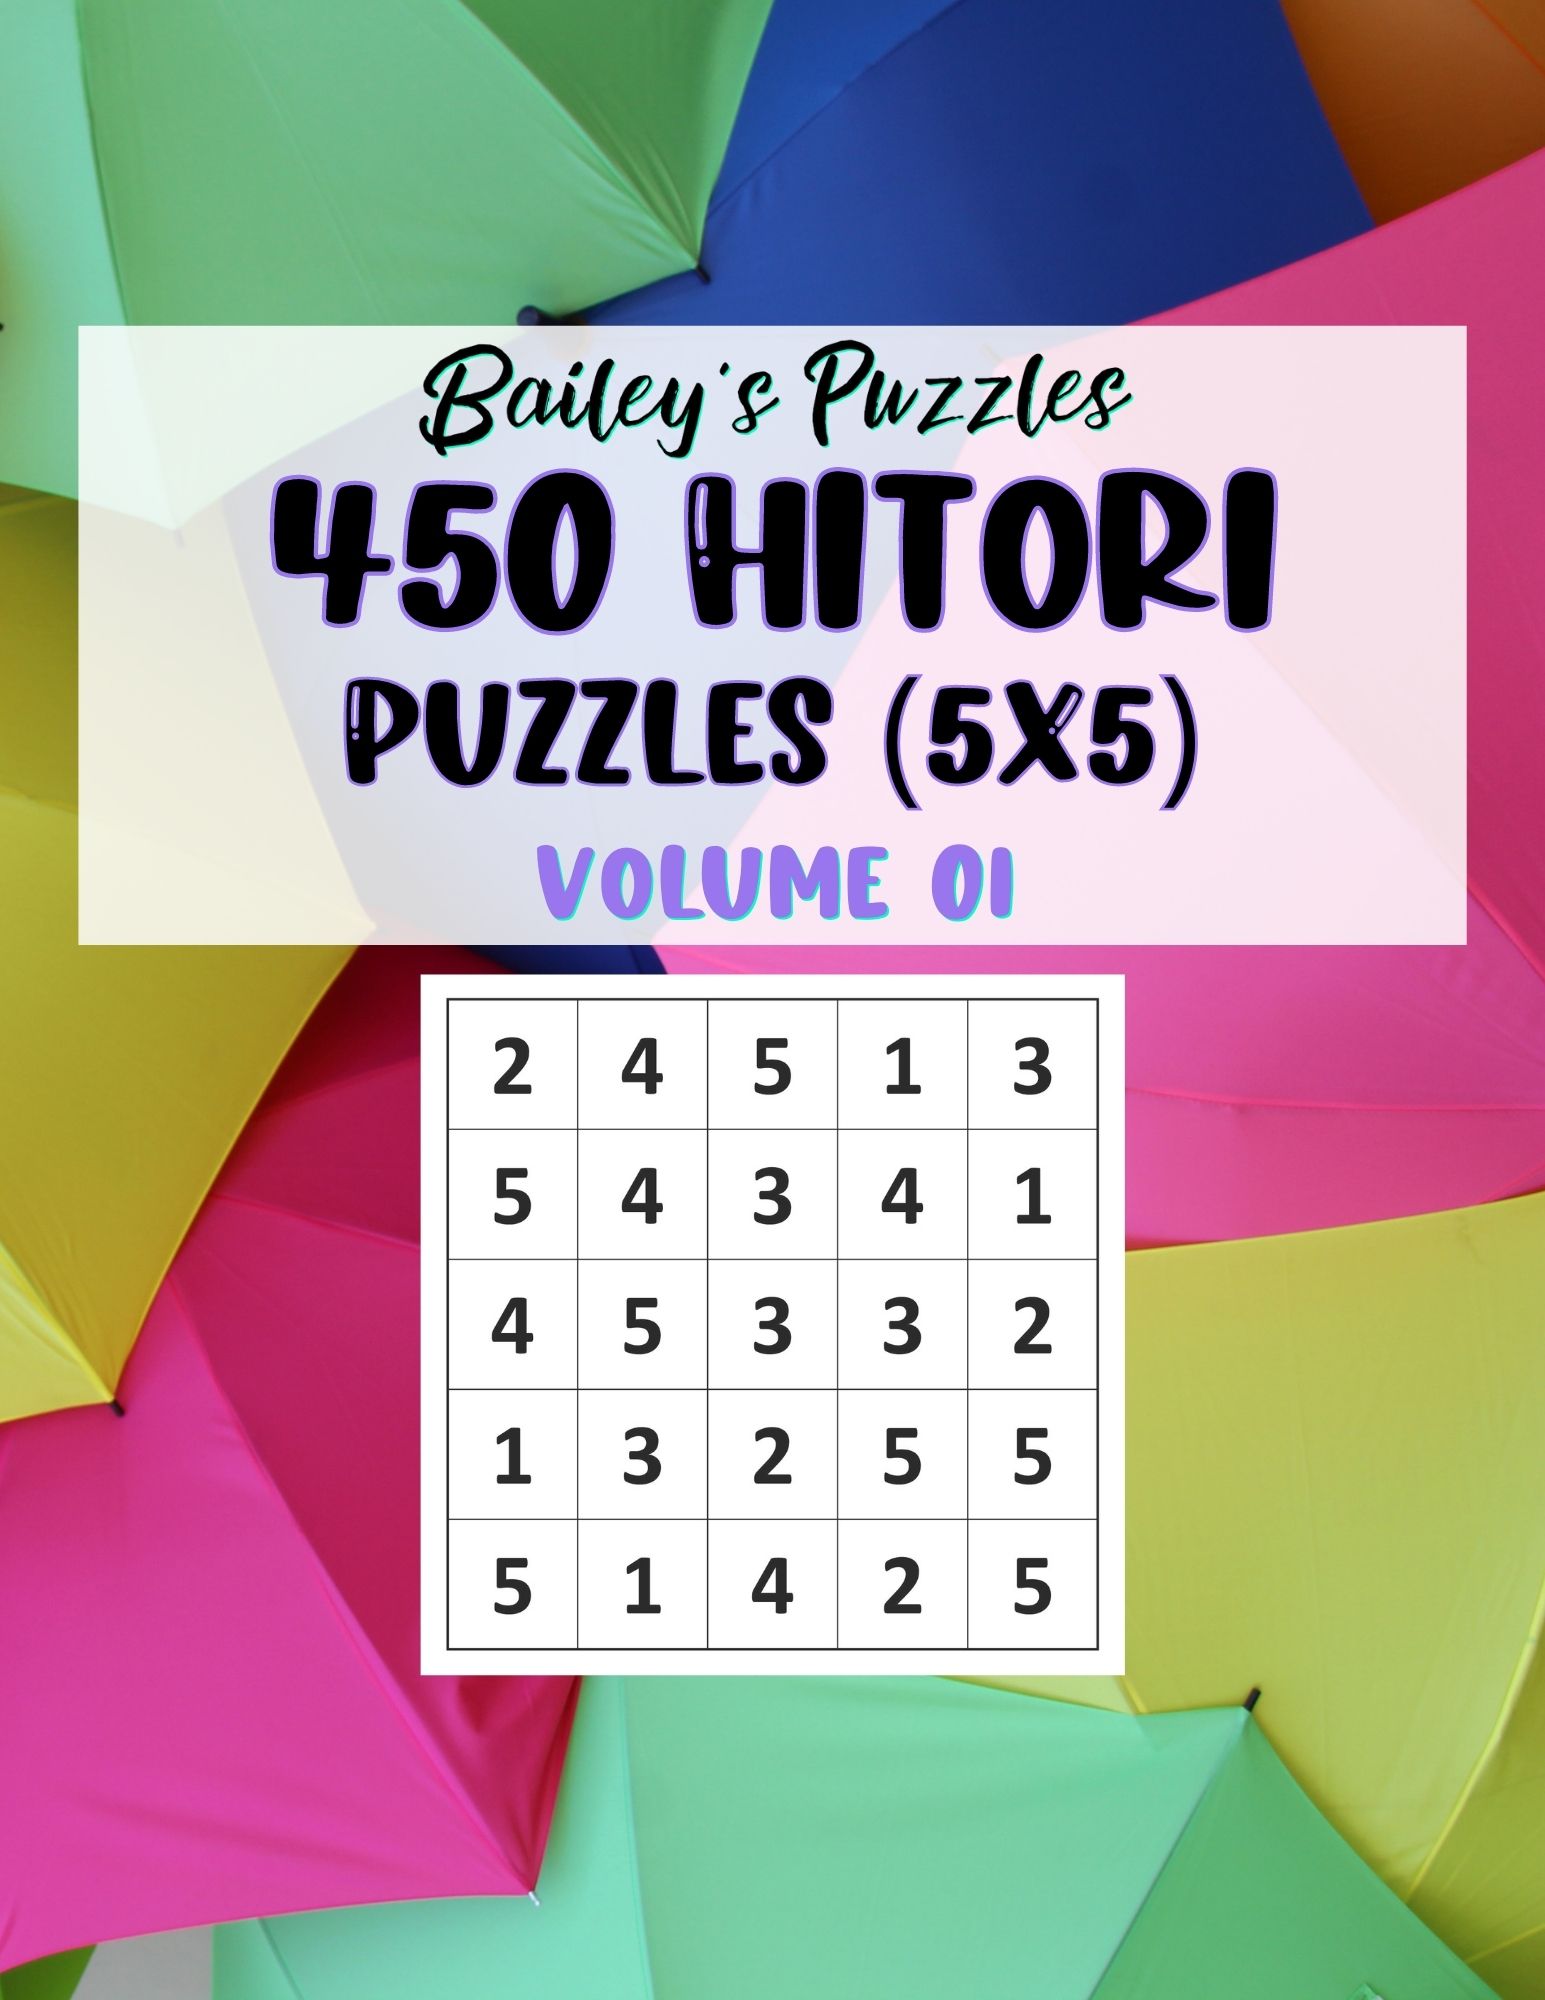 Buy Now: 450 Hitori Puzzles 5x5